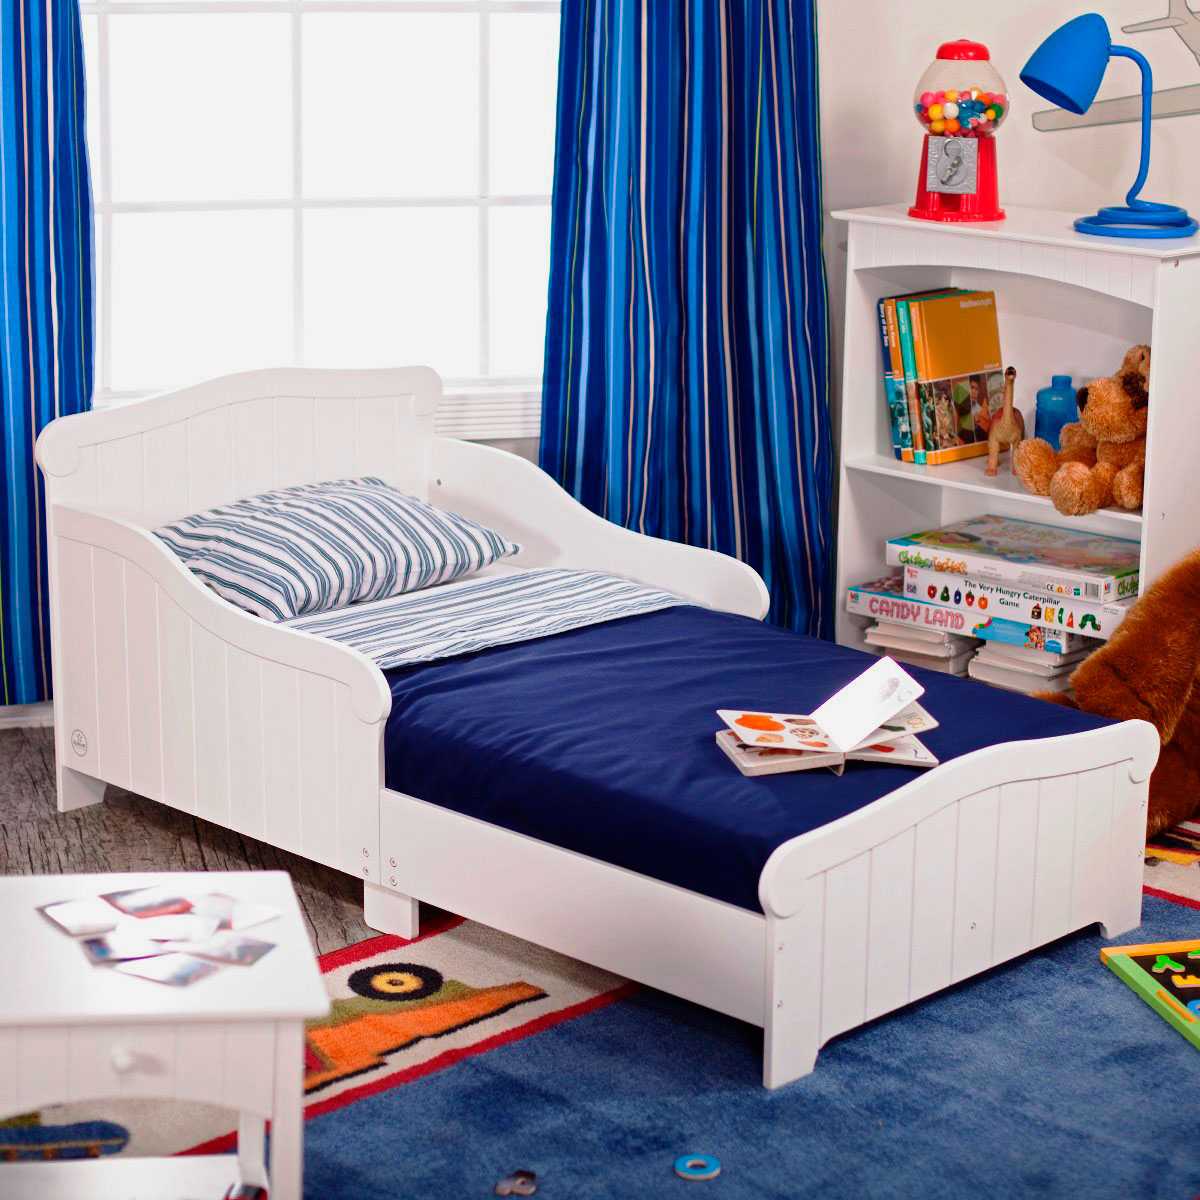 Детская кроватка для мальчика. Кровать икеа детская синяя. Подростковая кровать для мальчика икея икеа. Детские кровати от 5 лет икеа. Кровать подростковая для мальчика.